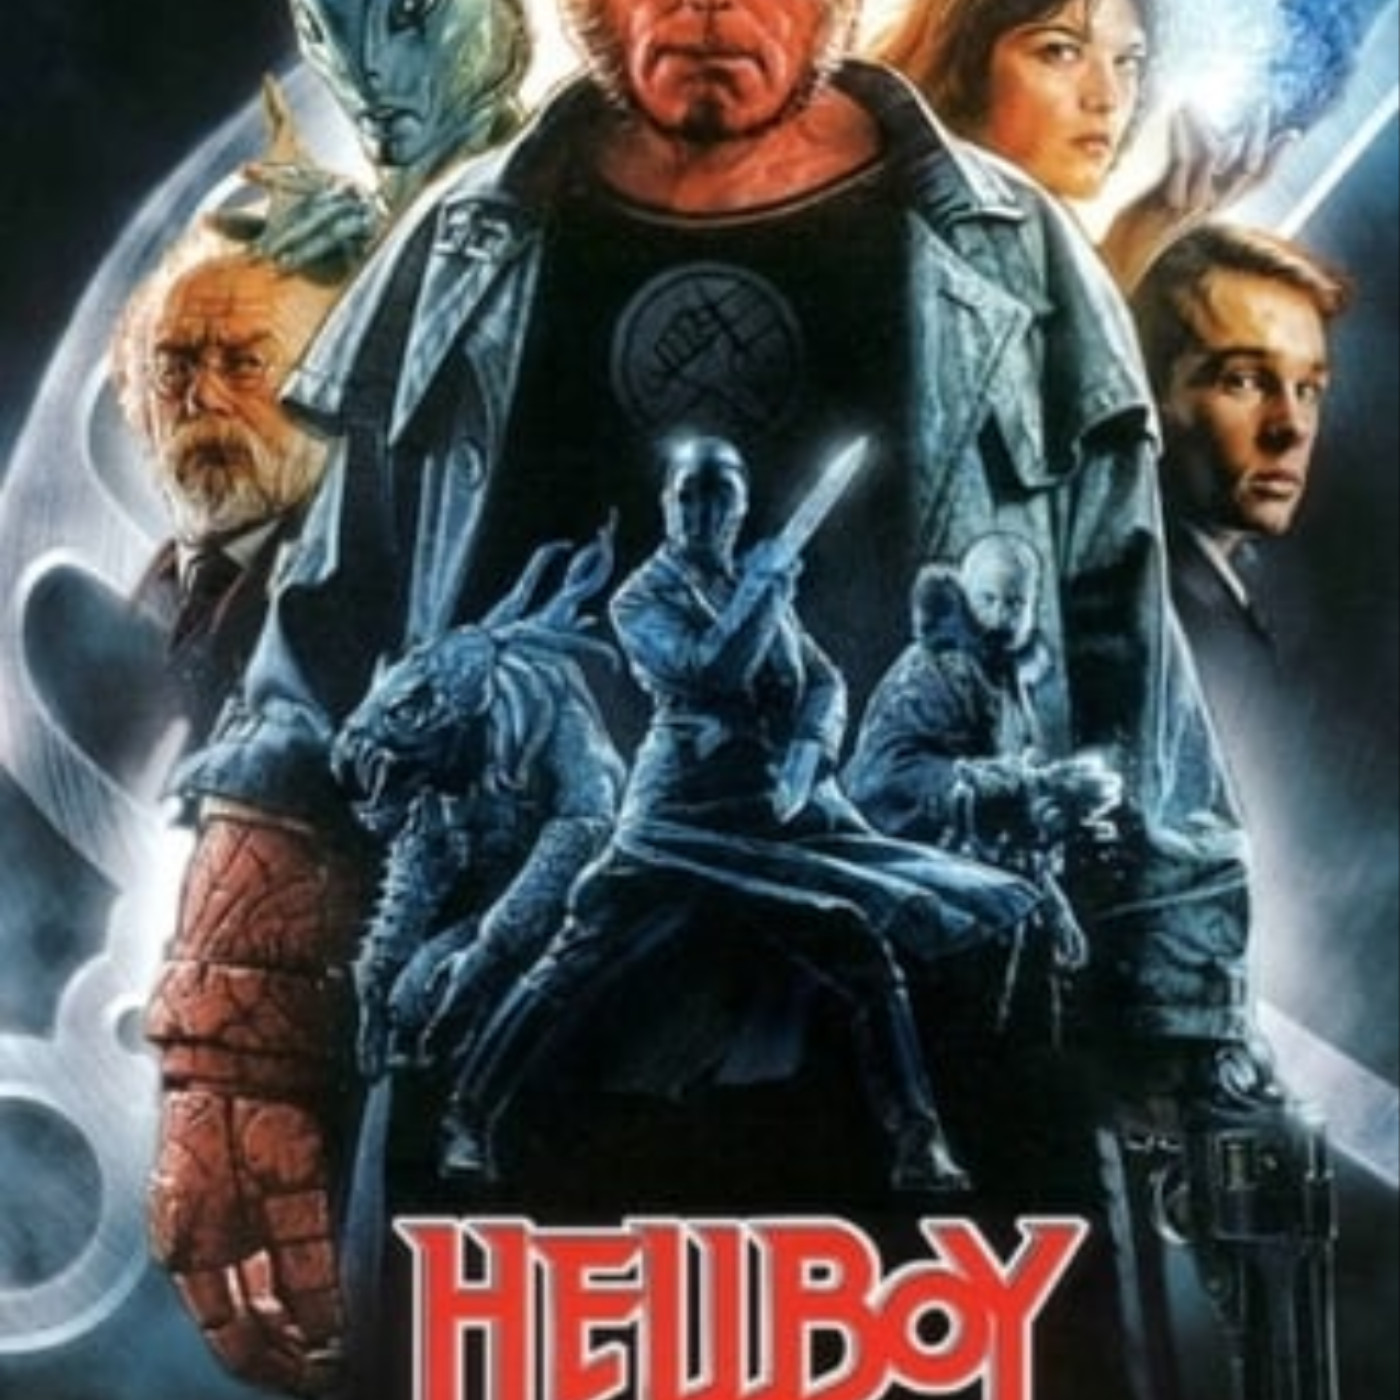 Ver Hellboy 2004 online gratis en español y latino | Podcast on SoundOn